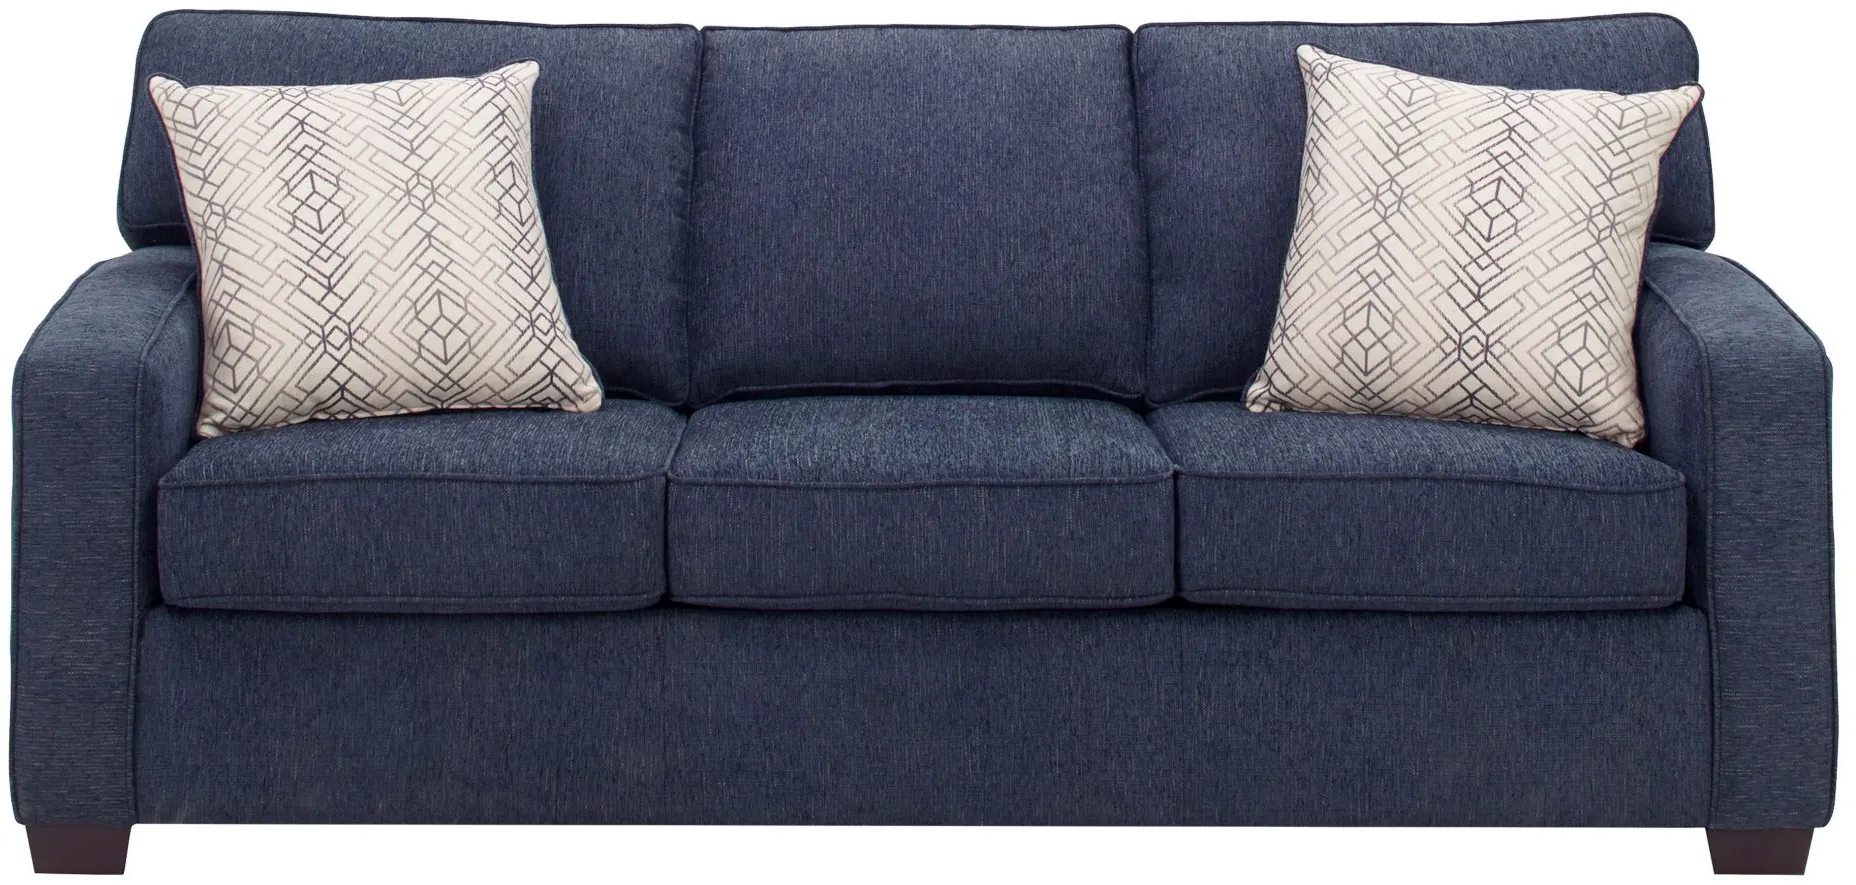 Gabe Queen Sleeper Sofa in Blue by Flair